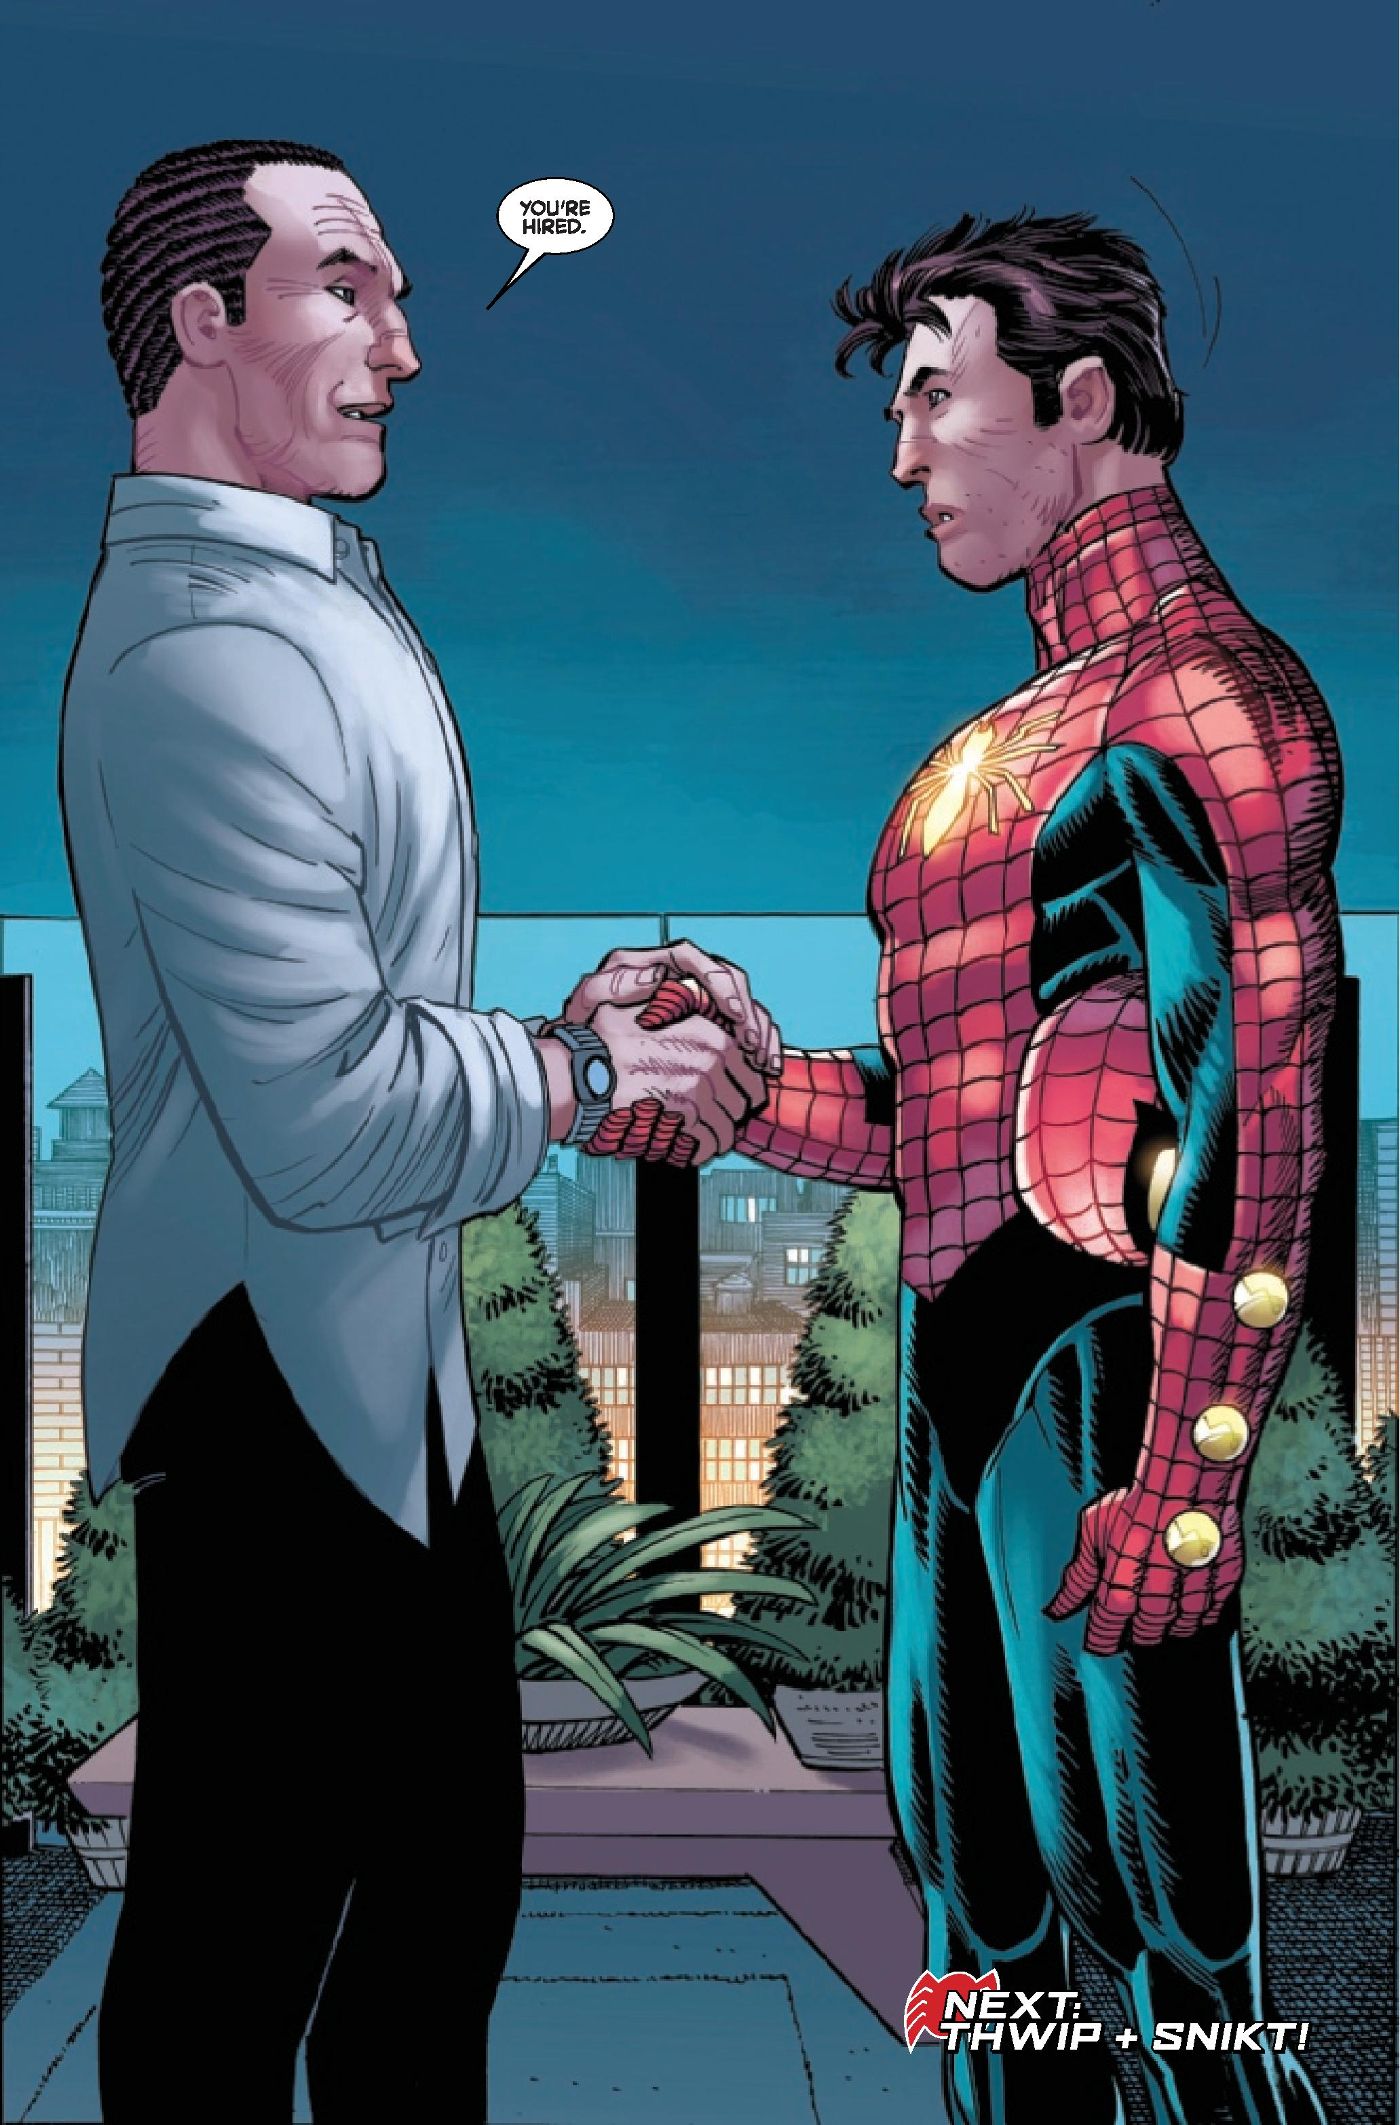 Norman Osborn hires Spider-Man